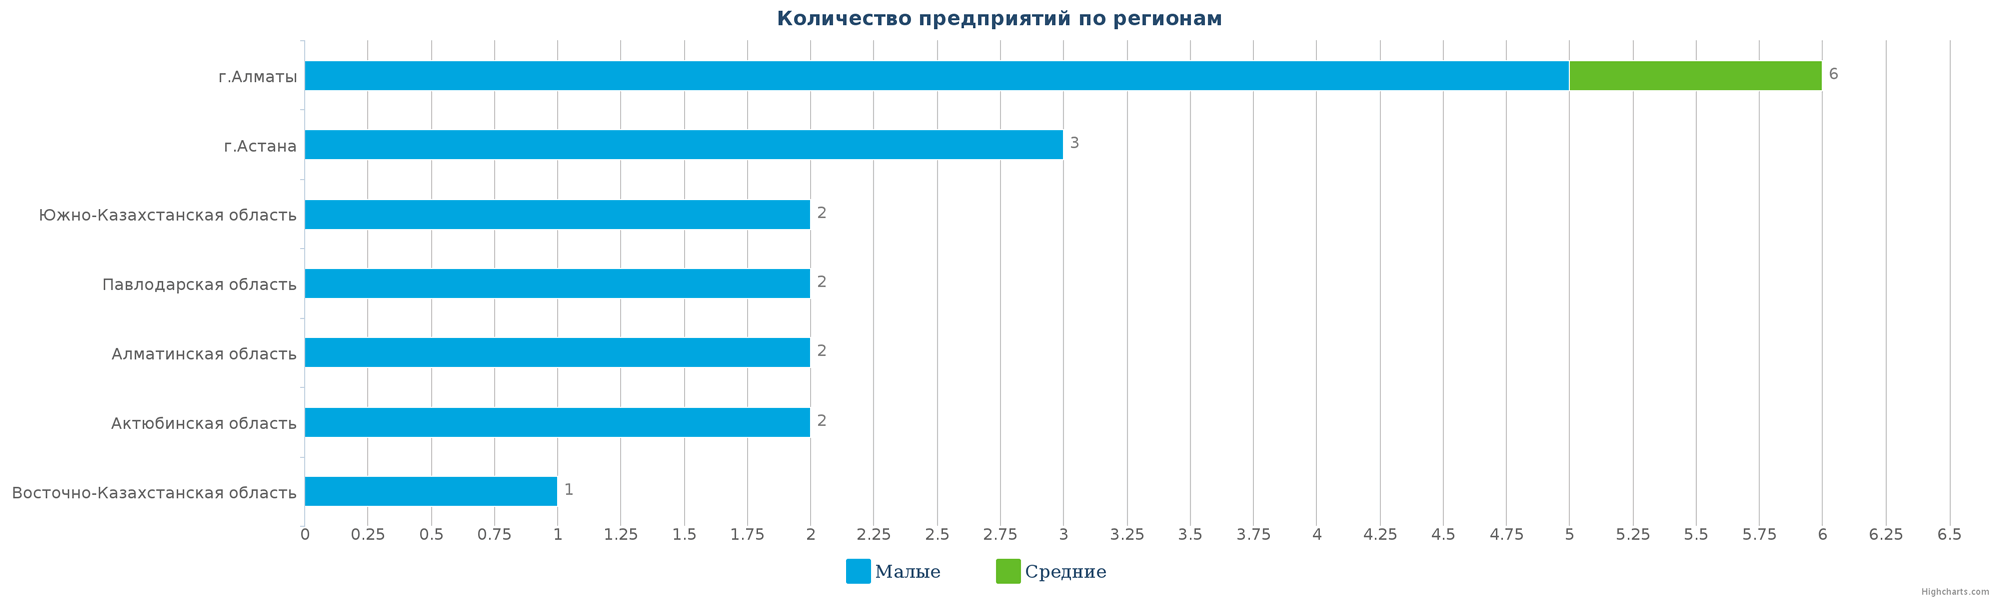 Количество новых промышленных предприятий по регионам Казахстана